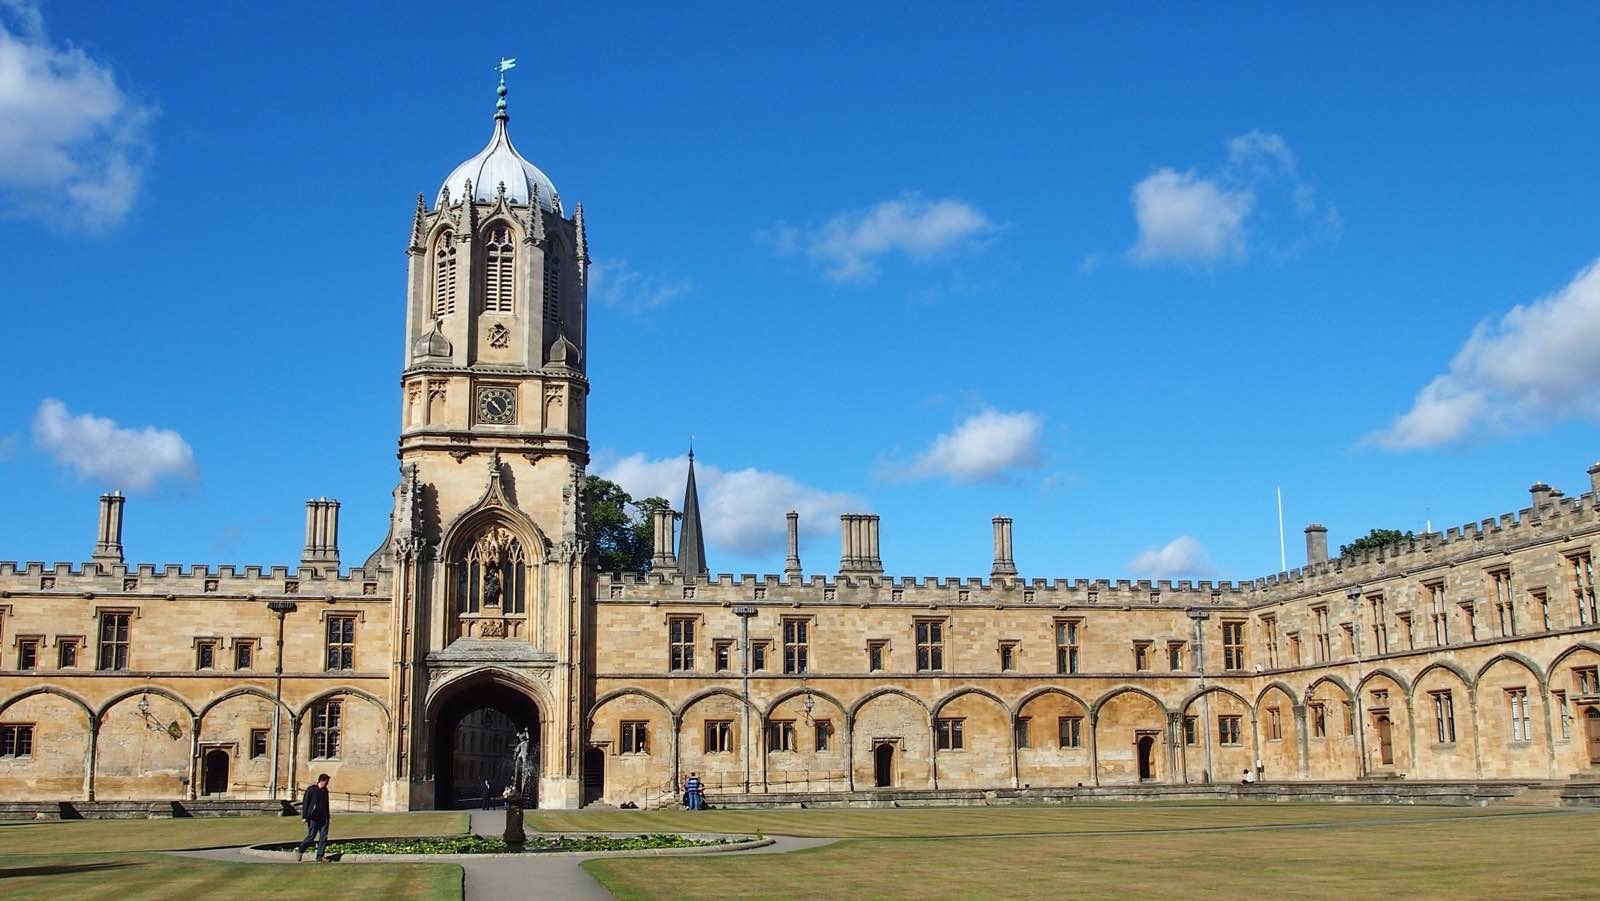 这一点,要从牛津大学的起源来讲,作为英语世界最古老的大学,最初只